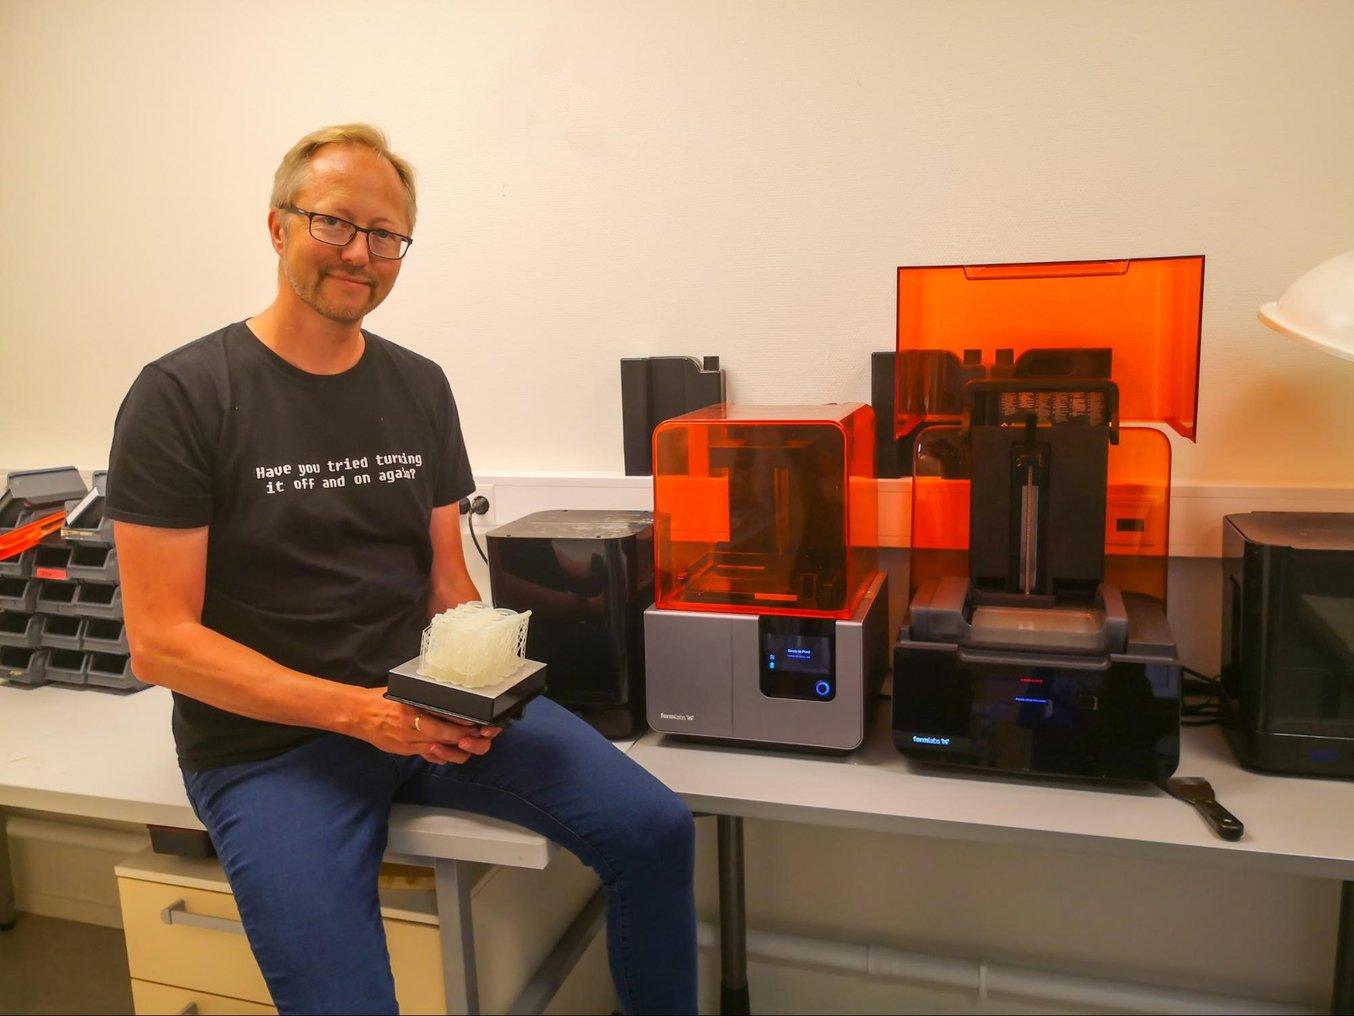 Røssvoll hat zwei SLA-3D-Drucker in seinem Büro, einen Form 2 und einen Form 3. Er hat mehr als 2600 Teile für mehr als 100 unterschiedliche Projekte gedruckt.